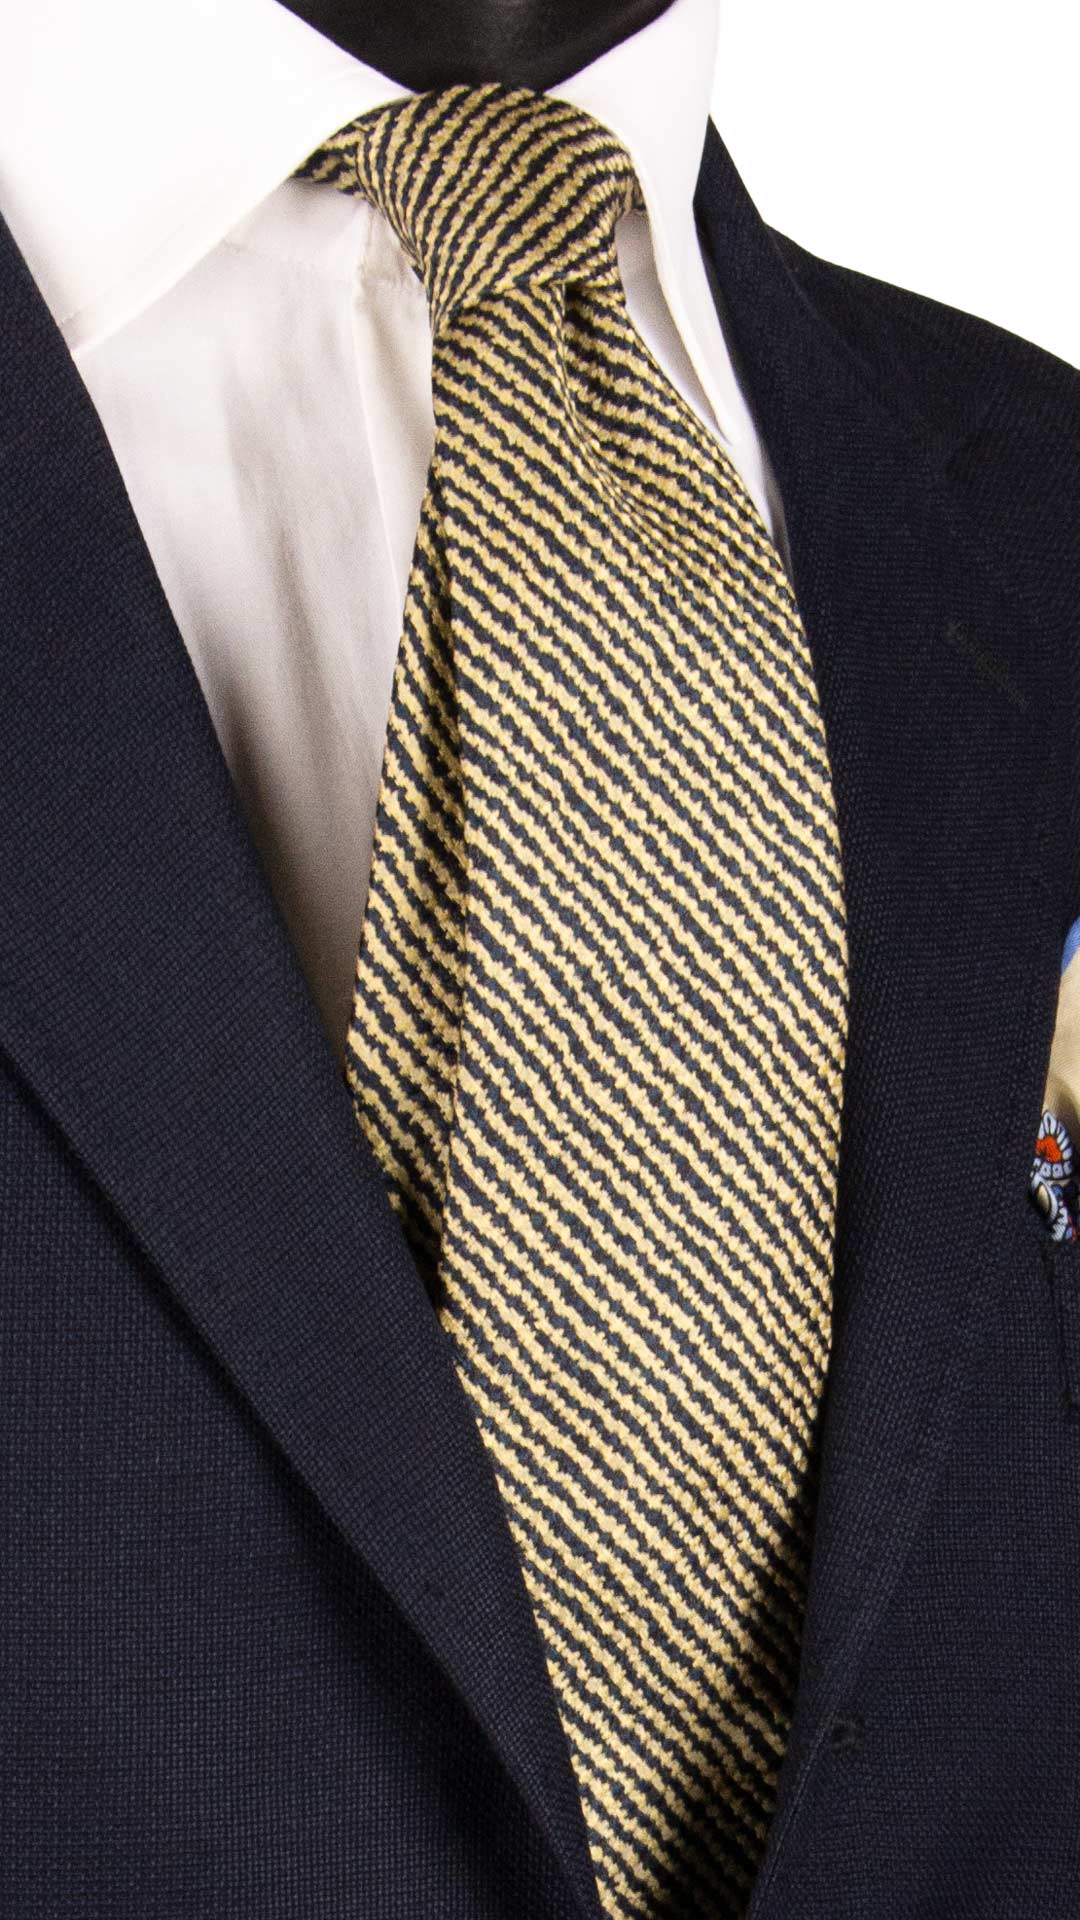 Cravatta Sette Pieghe di Seta Fantasia Gialla Blu 7P472 Made in italy Graffeo Cravatte